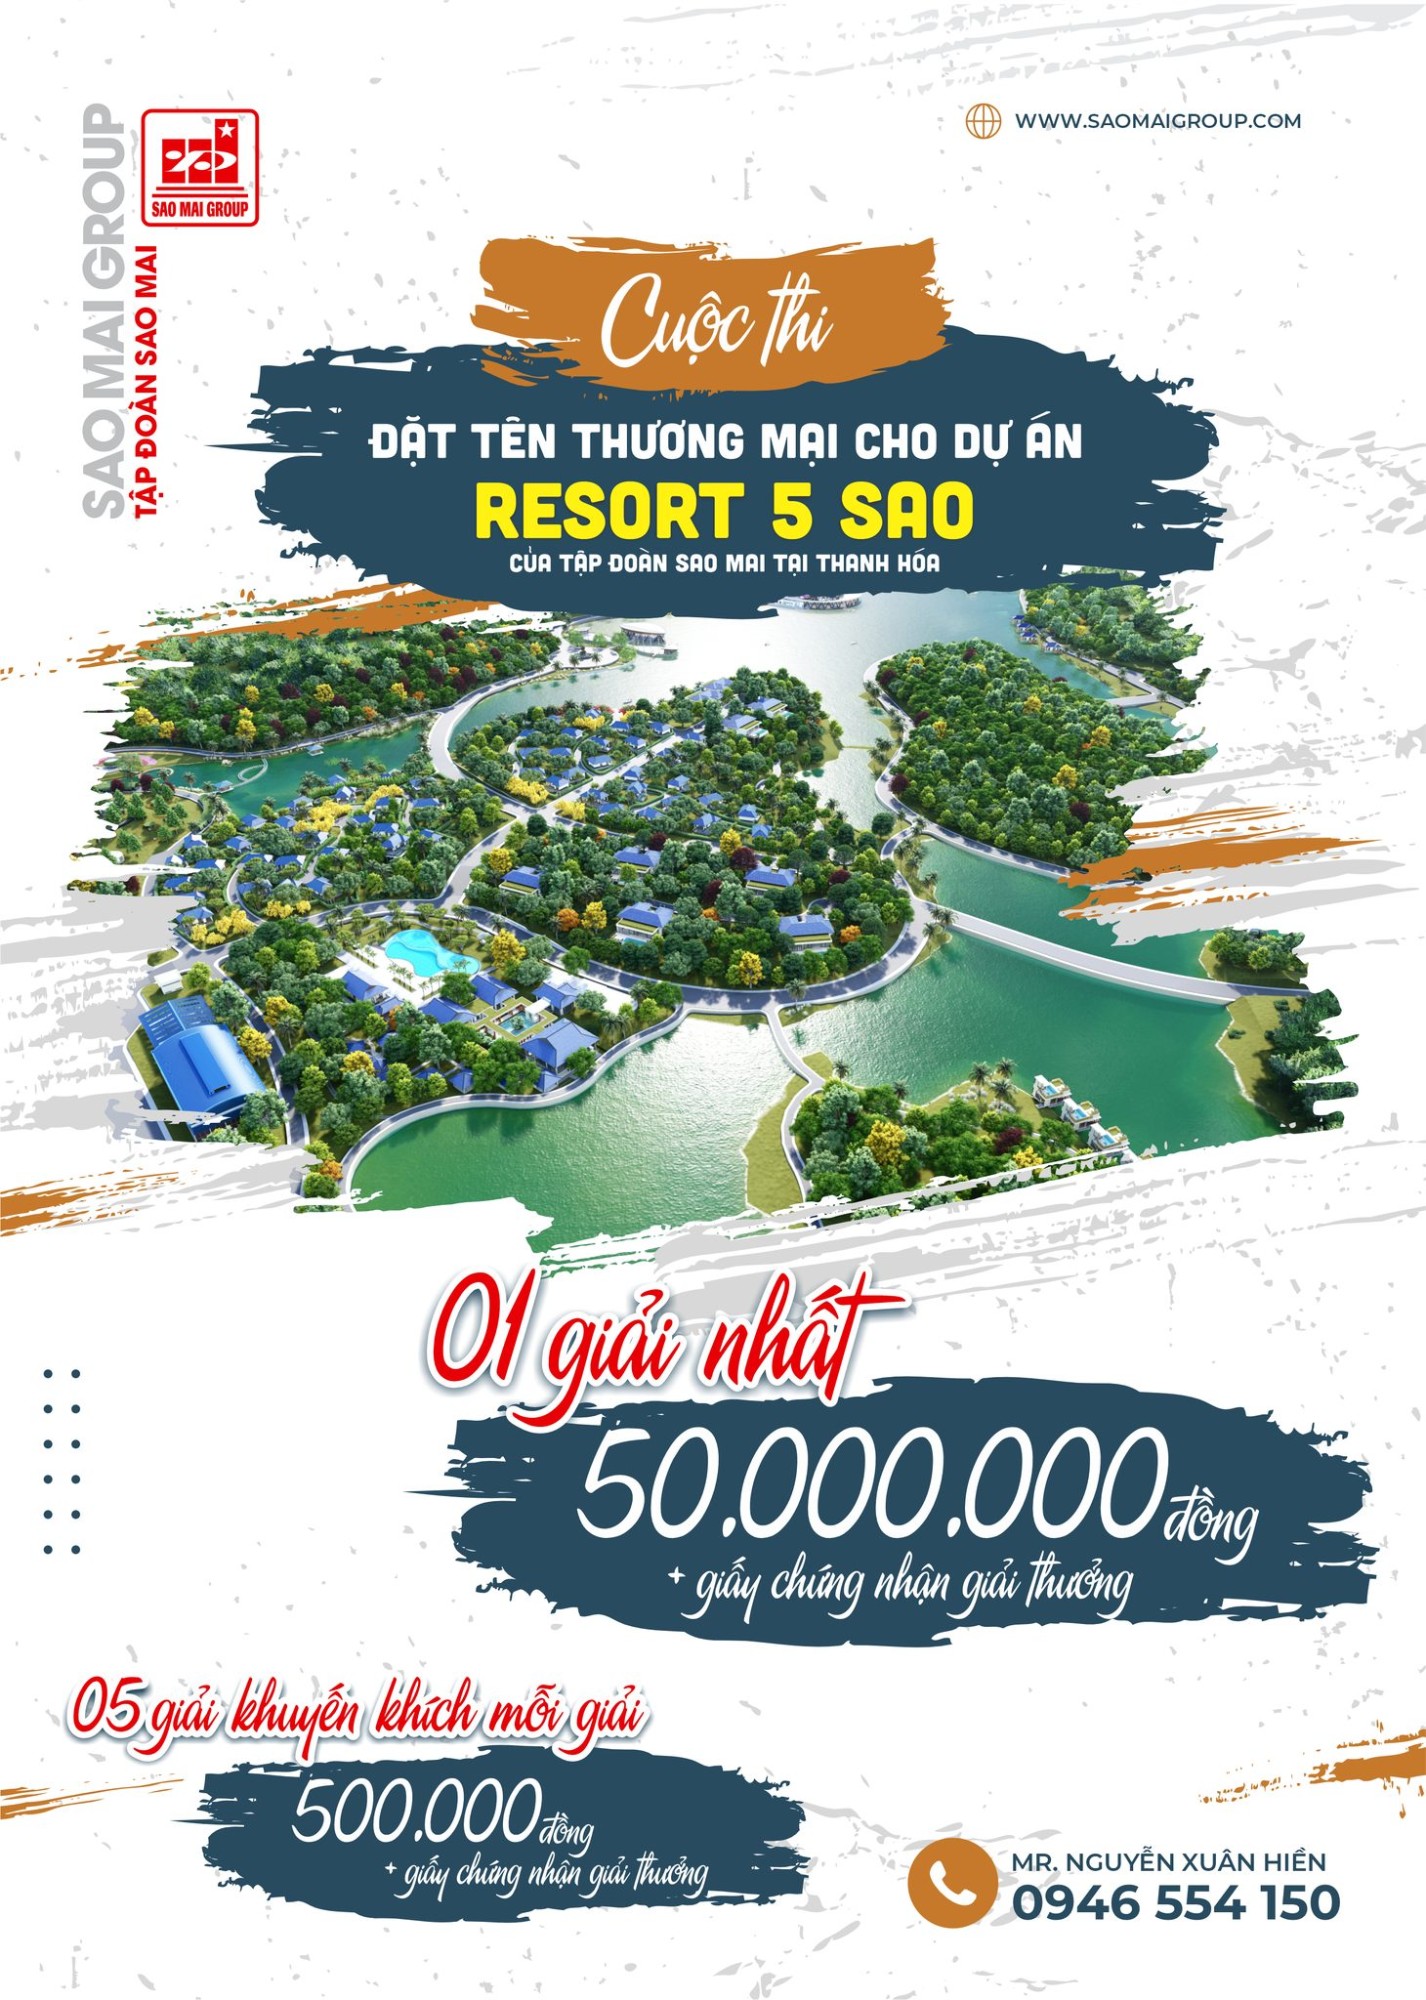 Thông tin Cuộc thi đặt tên thương mại cho dự án  Resort của Tập đoàn Sao Mai tại Thanh Hóa